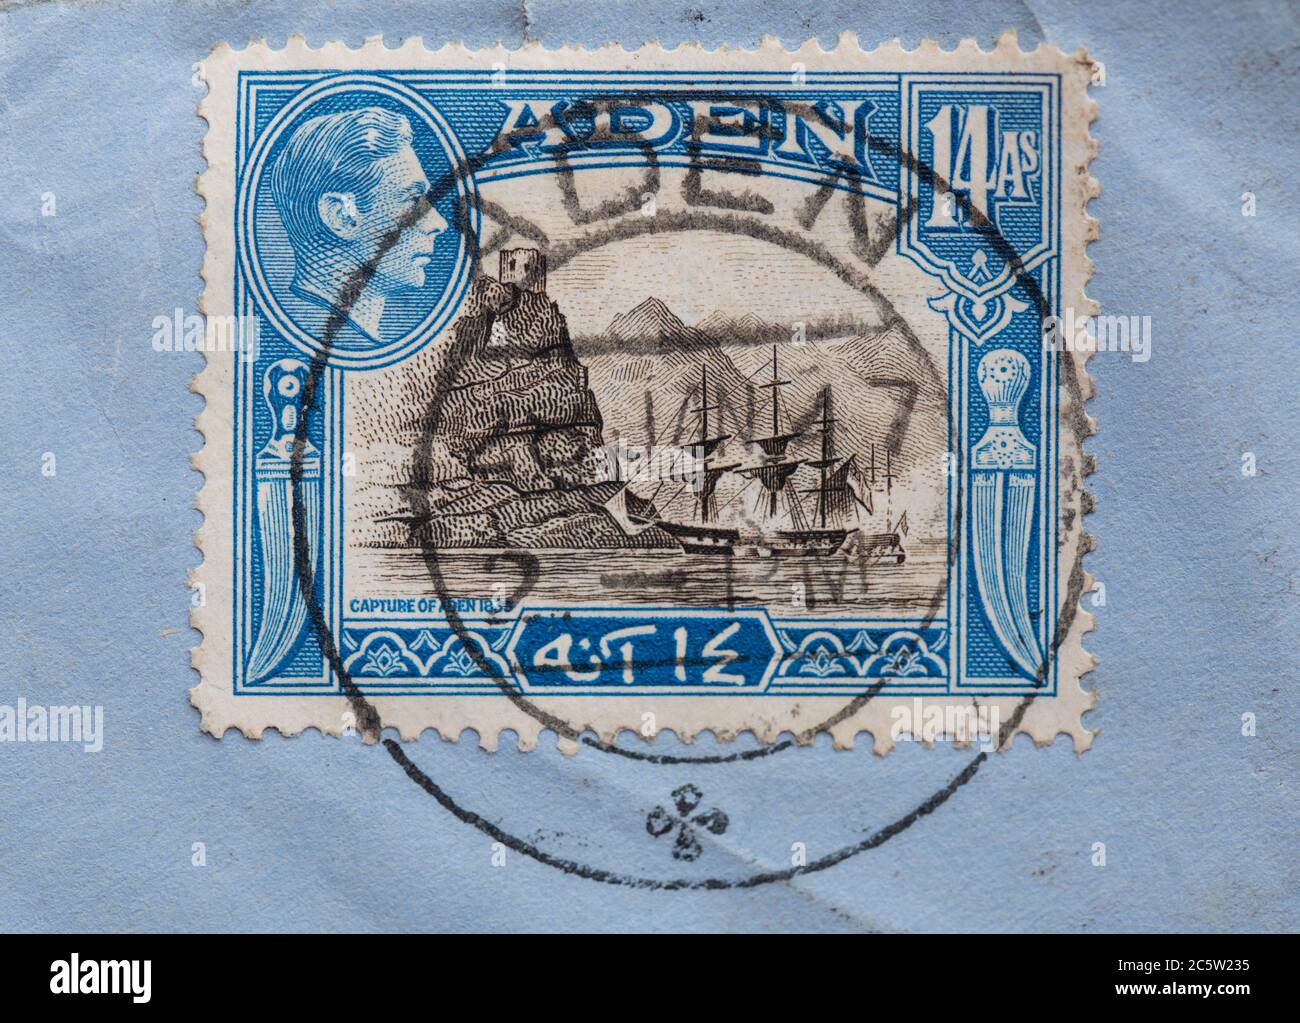 Capture of Aden 1839 stamp, Yemen Stock Photo